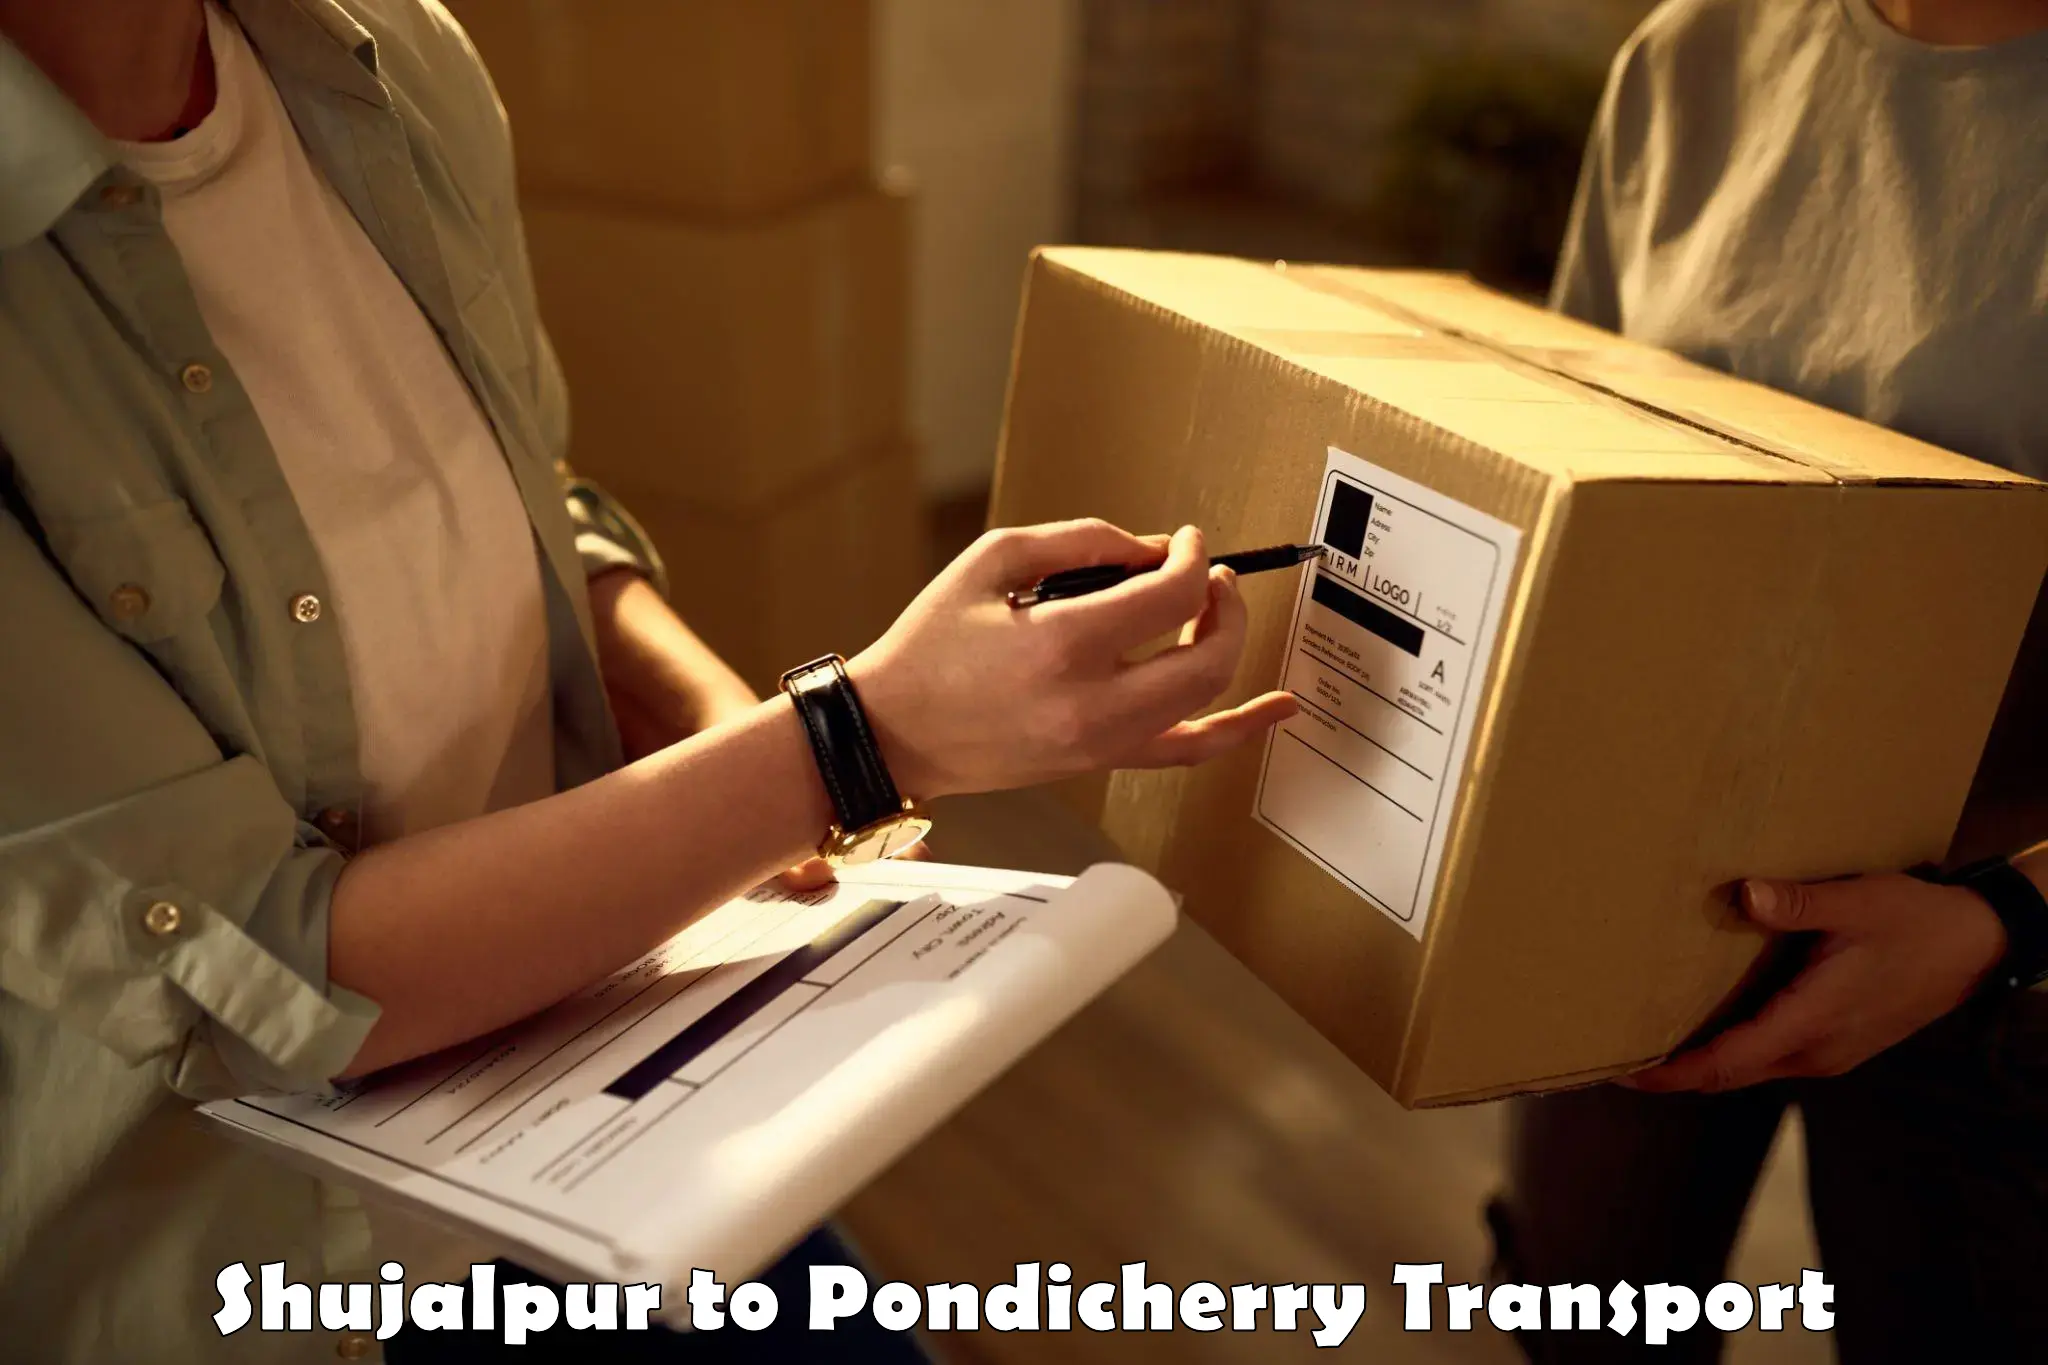 Daily parcel service transport Shujalpur to Karaikal